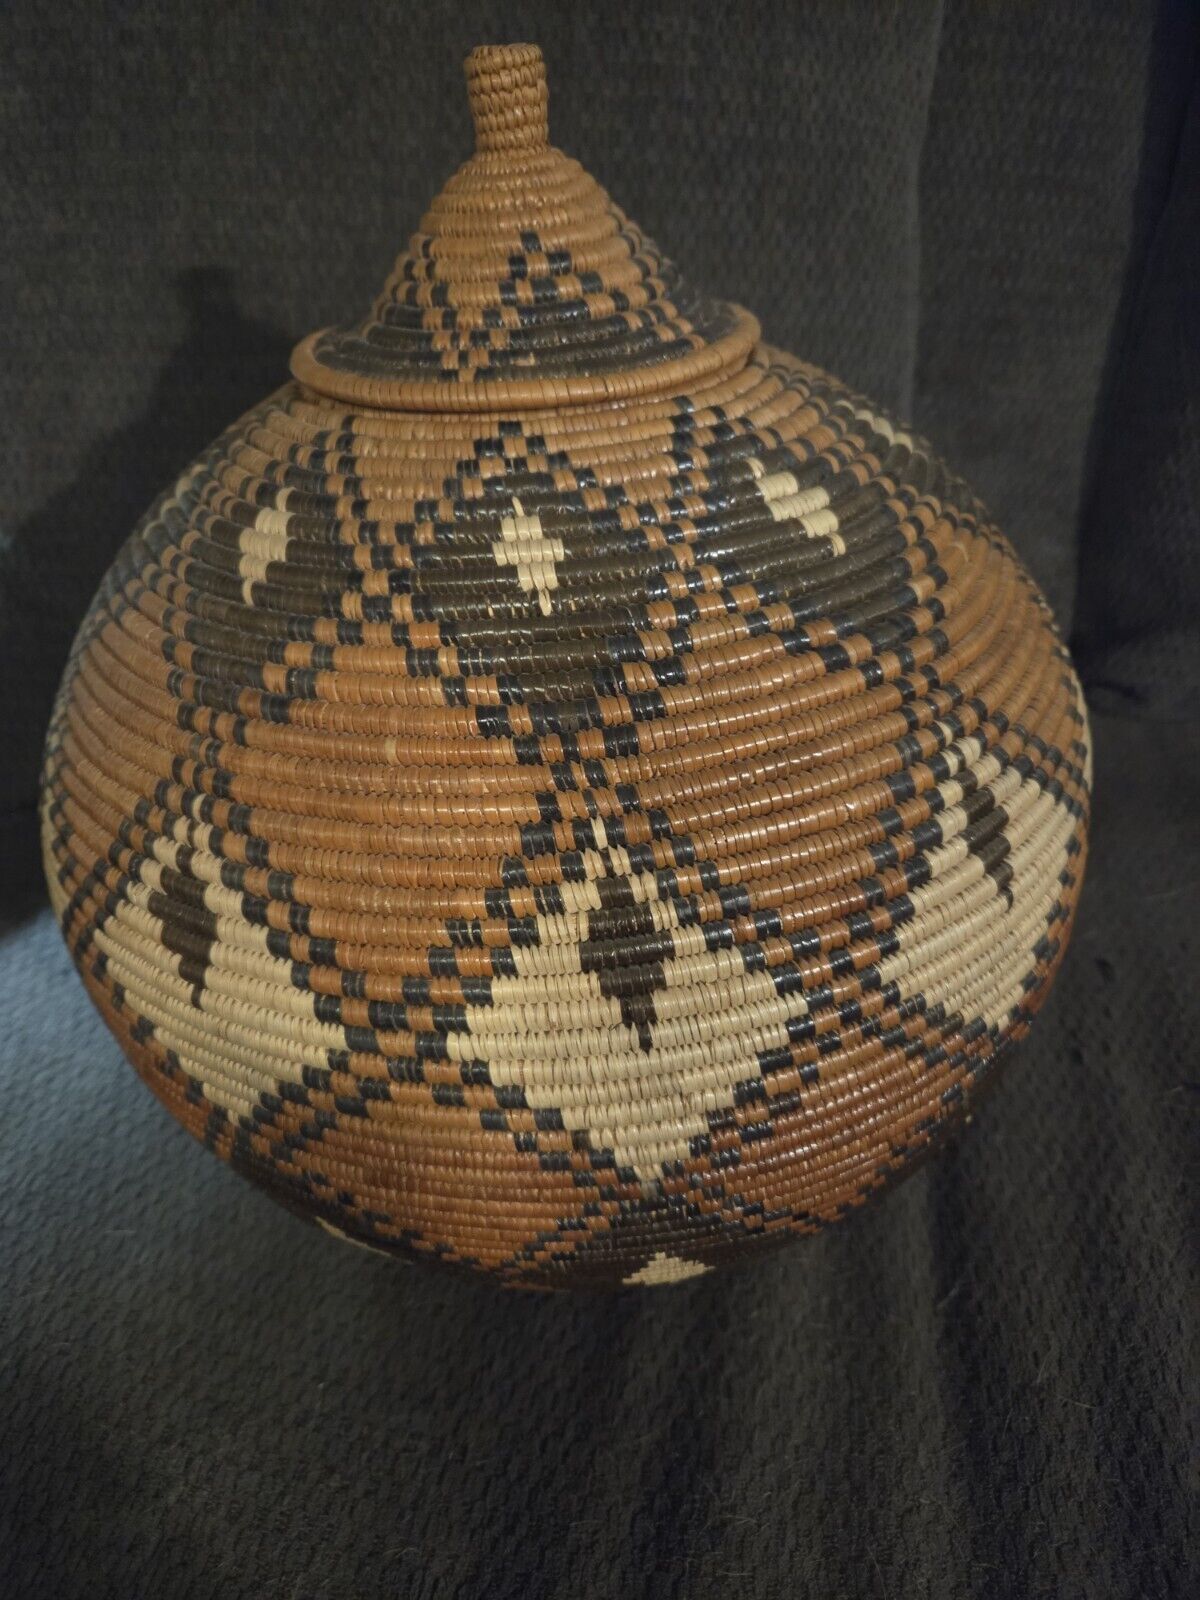 Vintage African Zulu Large Beer Basket with lid.